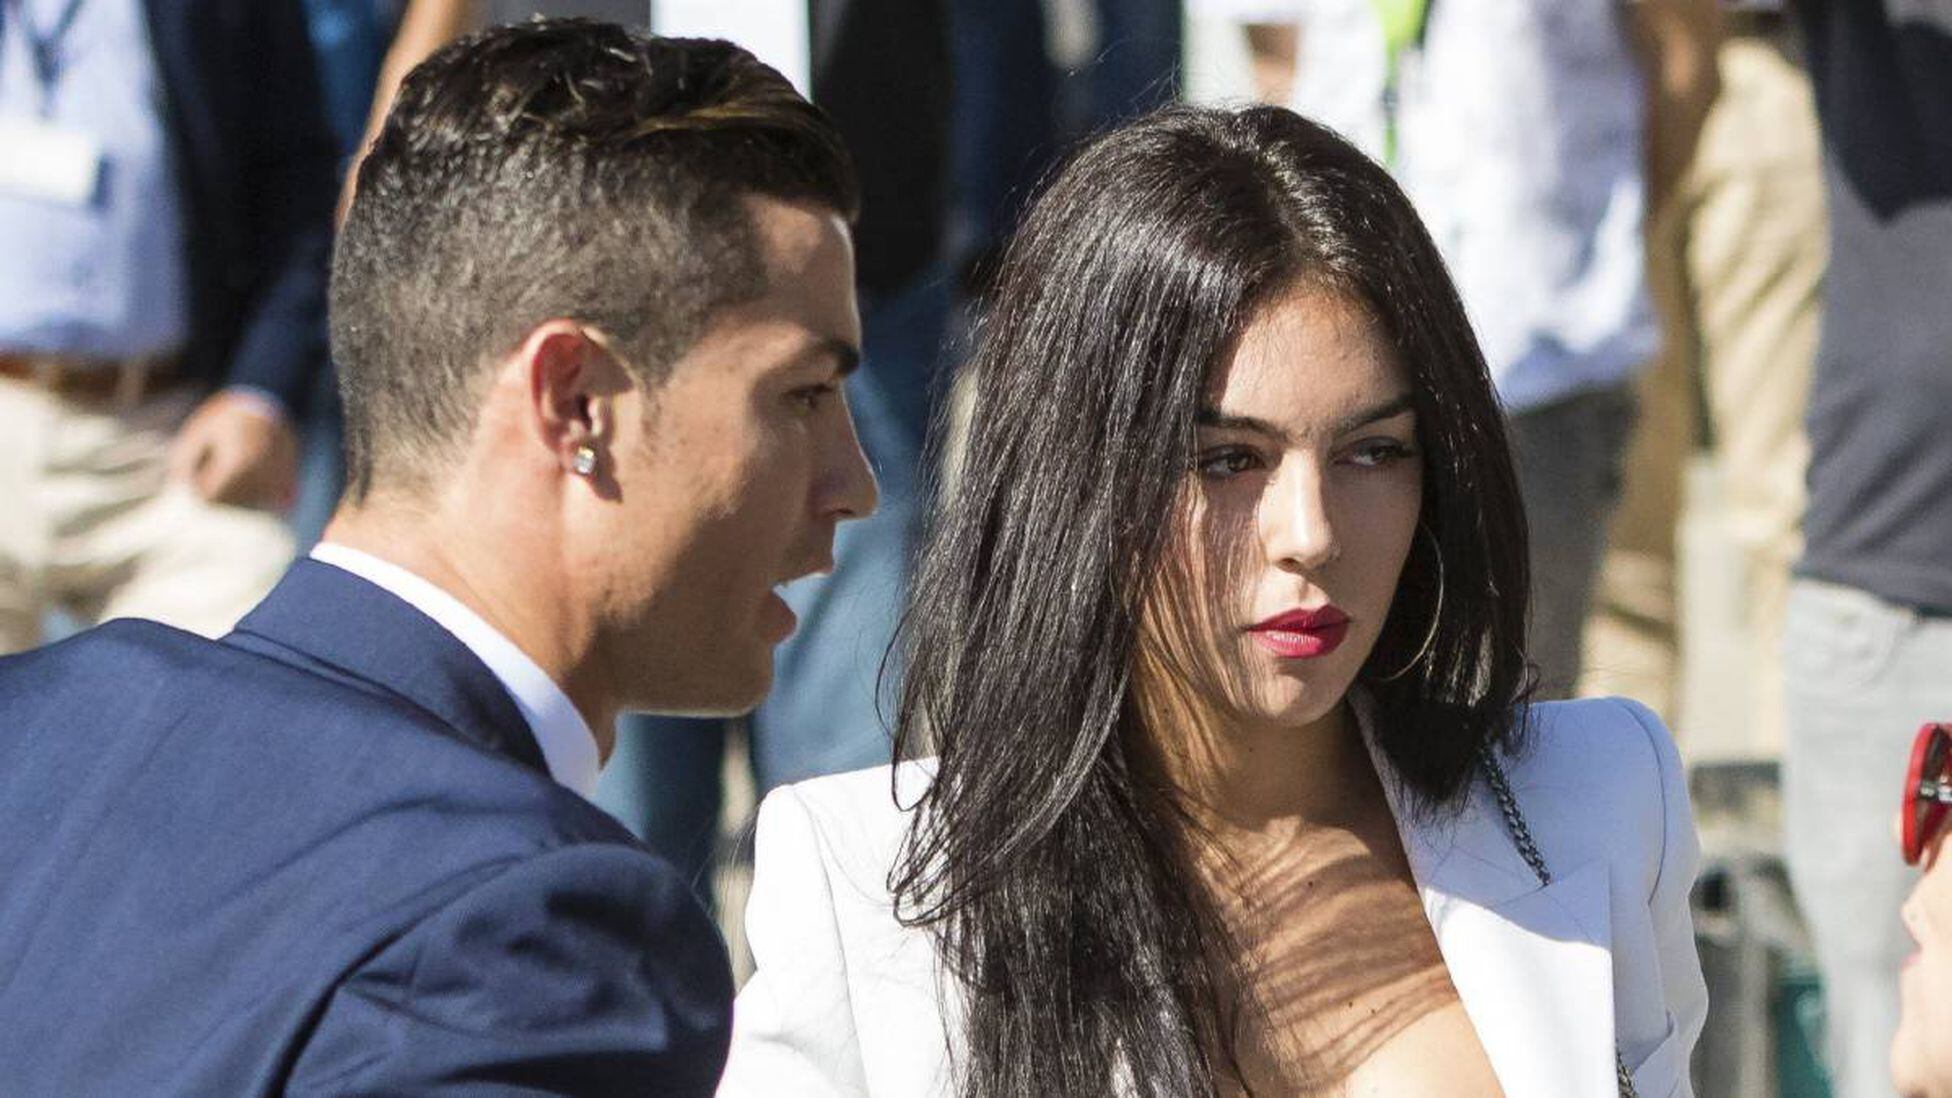 La novia de Cristiano Ronaldo deja su trabajo y será modelo - Tikitakas